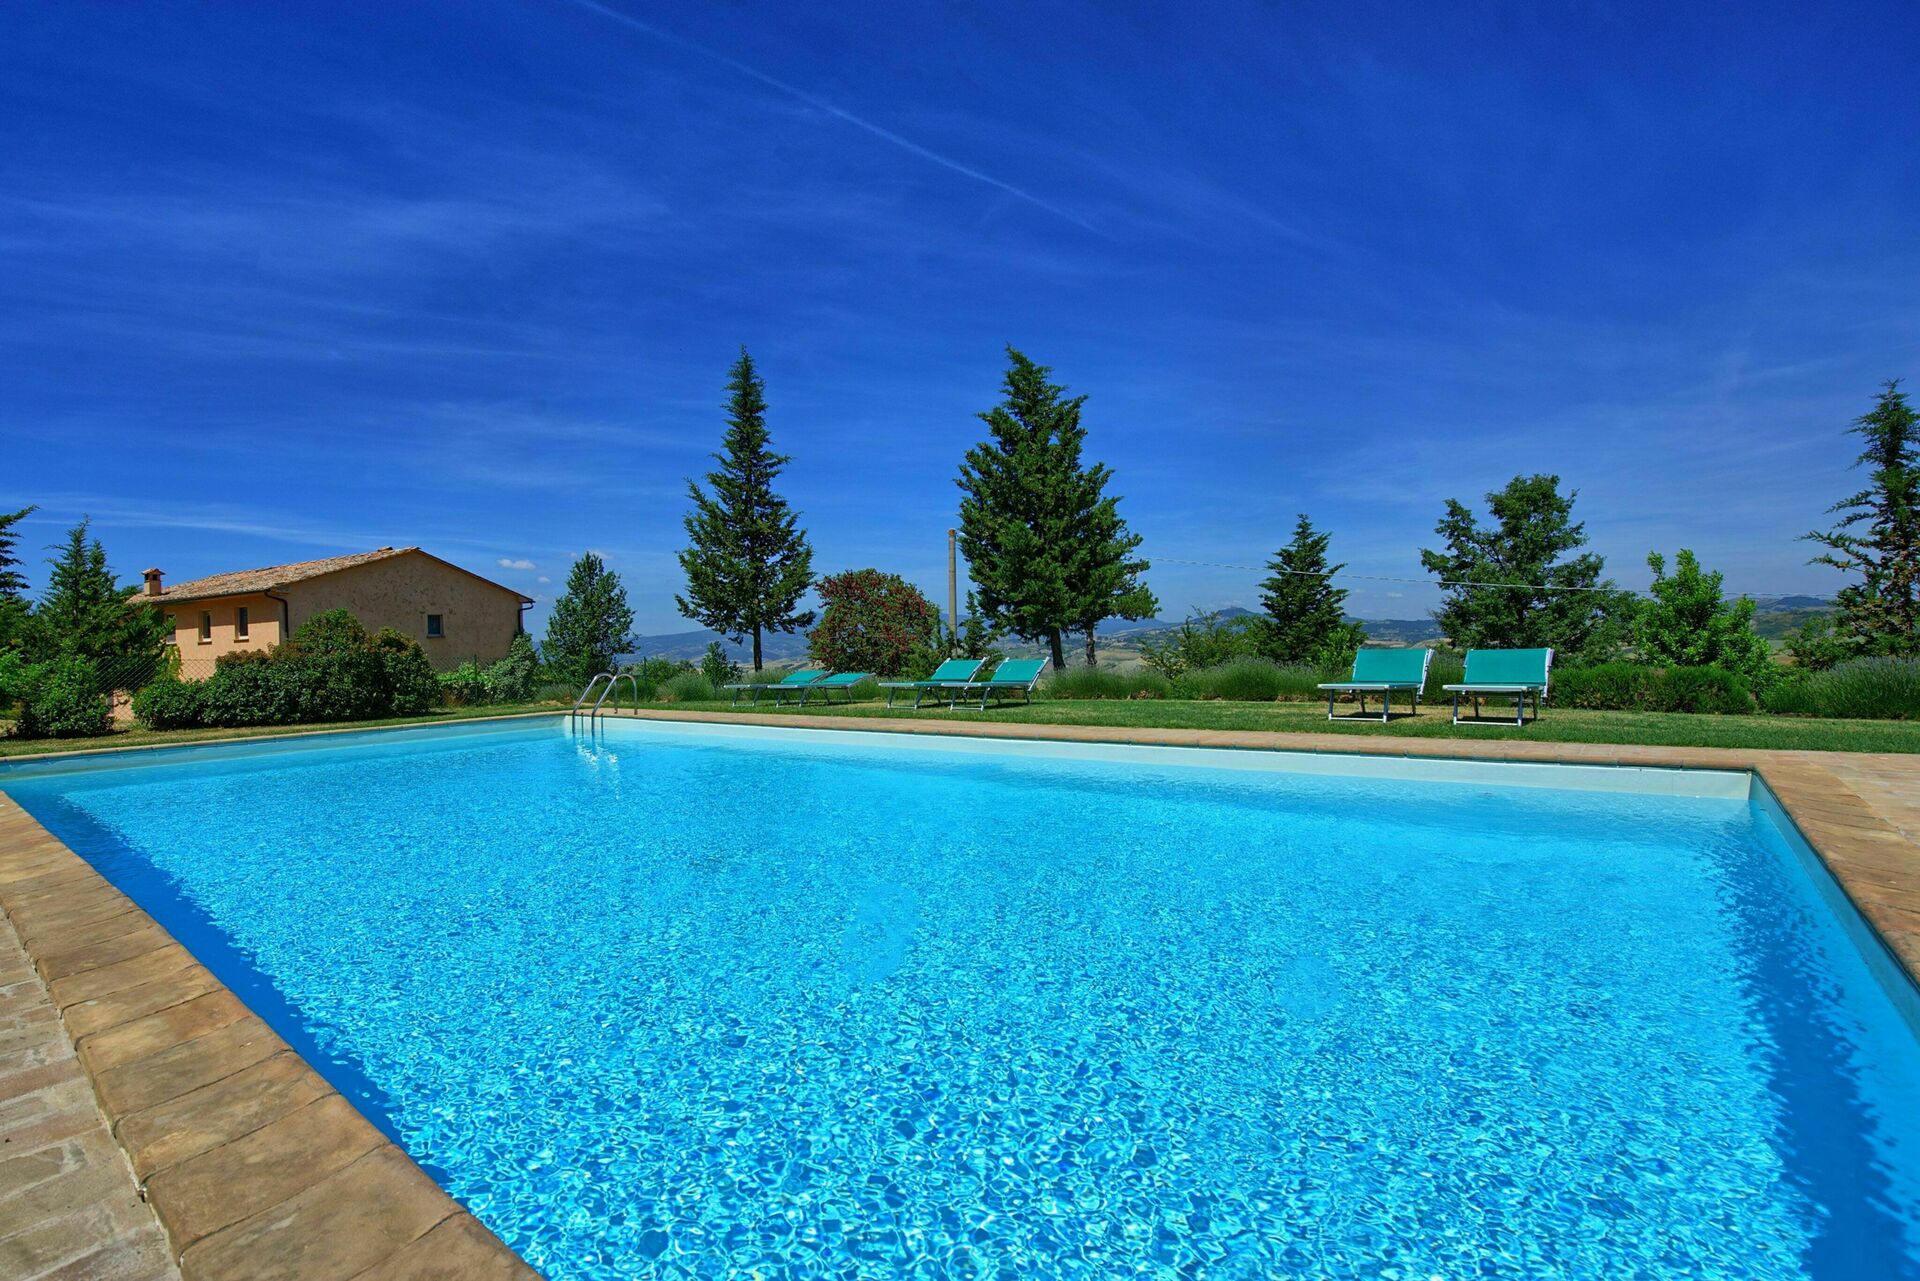 459_60f0531_Villa Stefano, 6 slaapkamers, prive zwembad, Toscane, Lazio, ruime tuin (12)